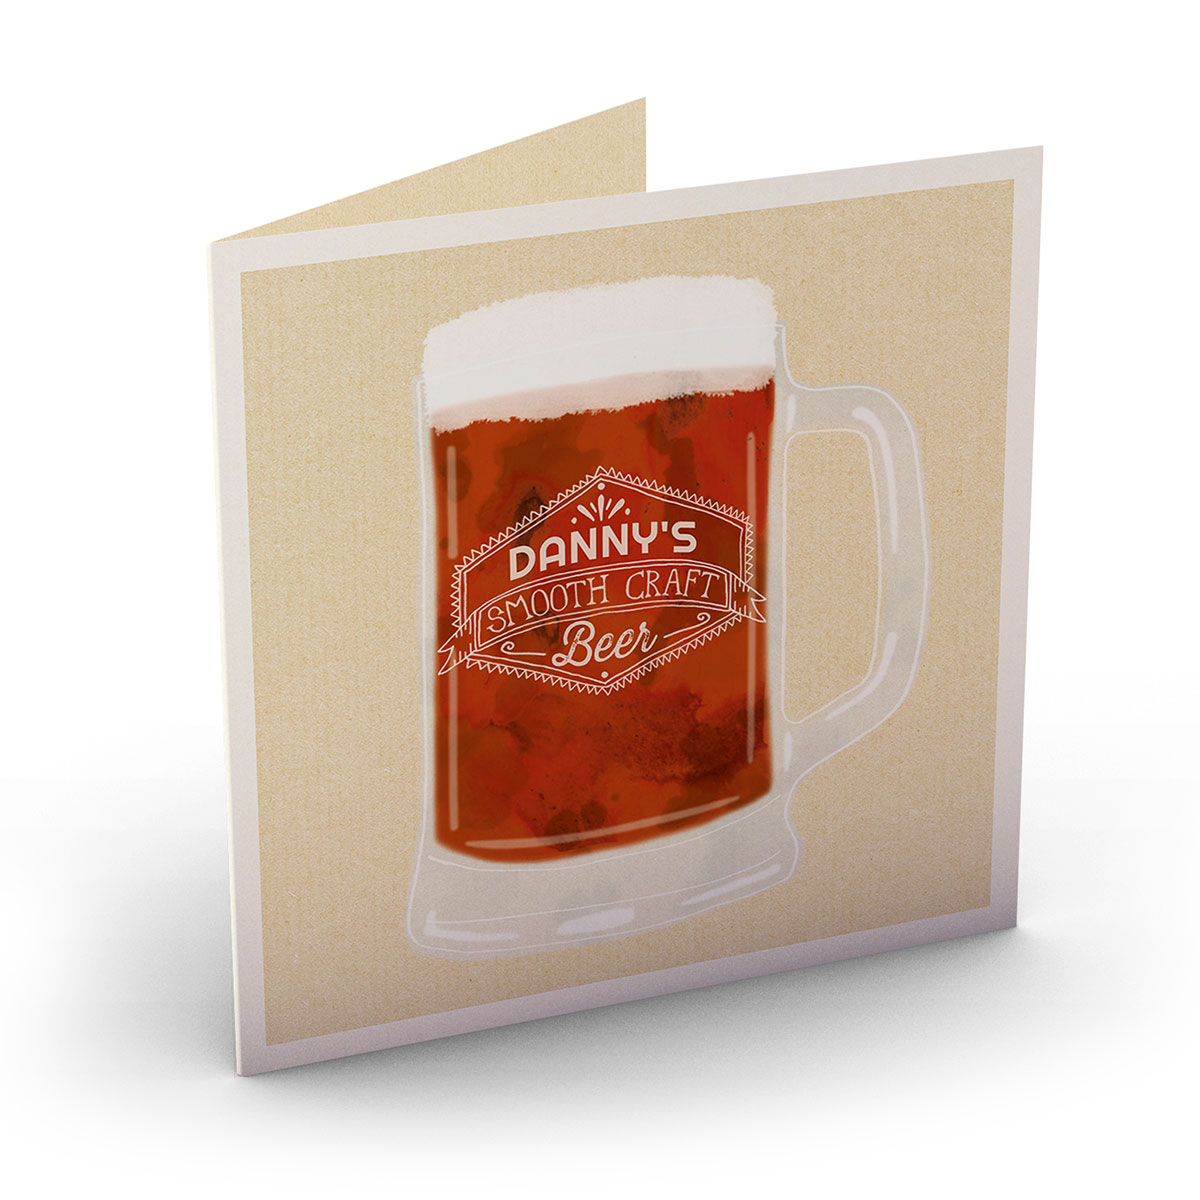 Personalised Card - Smooth Craft Beer